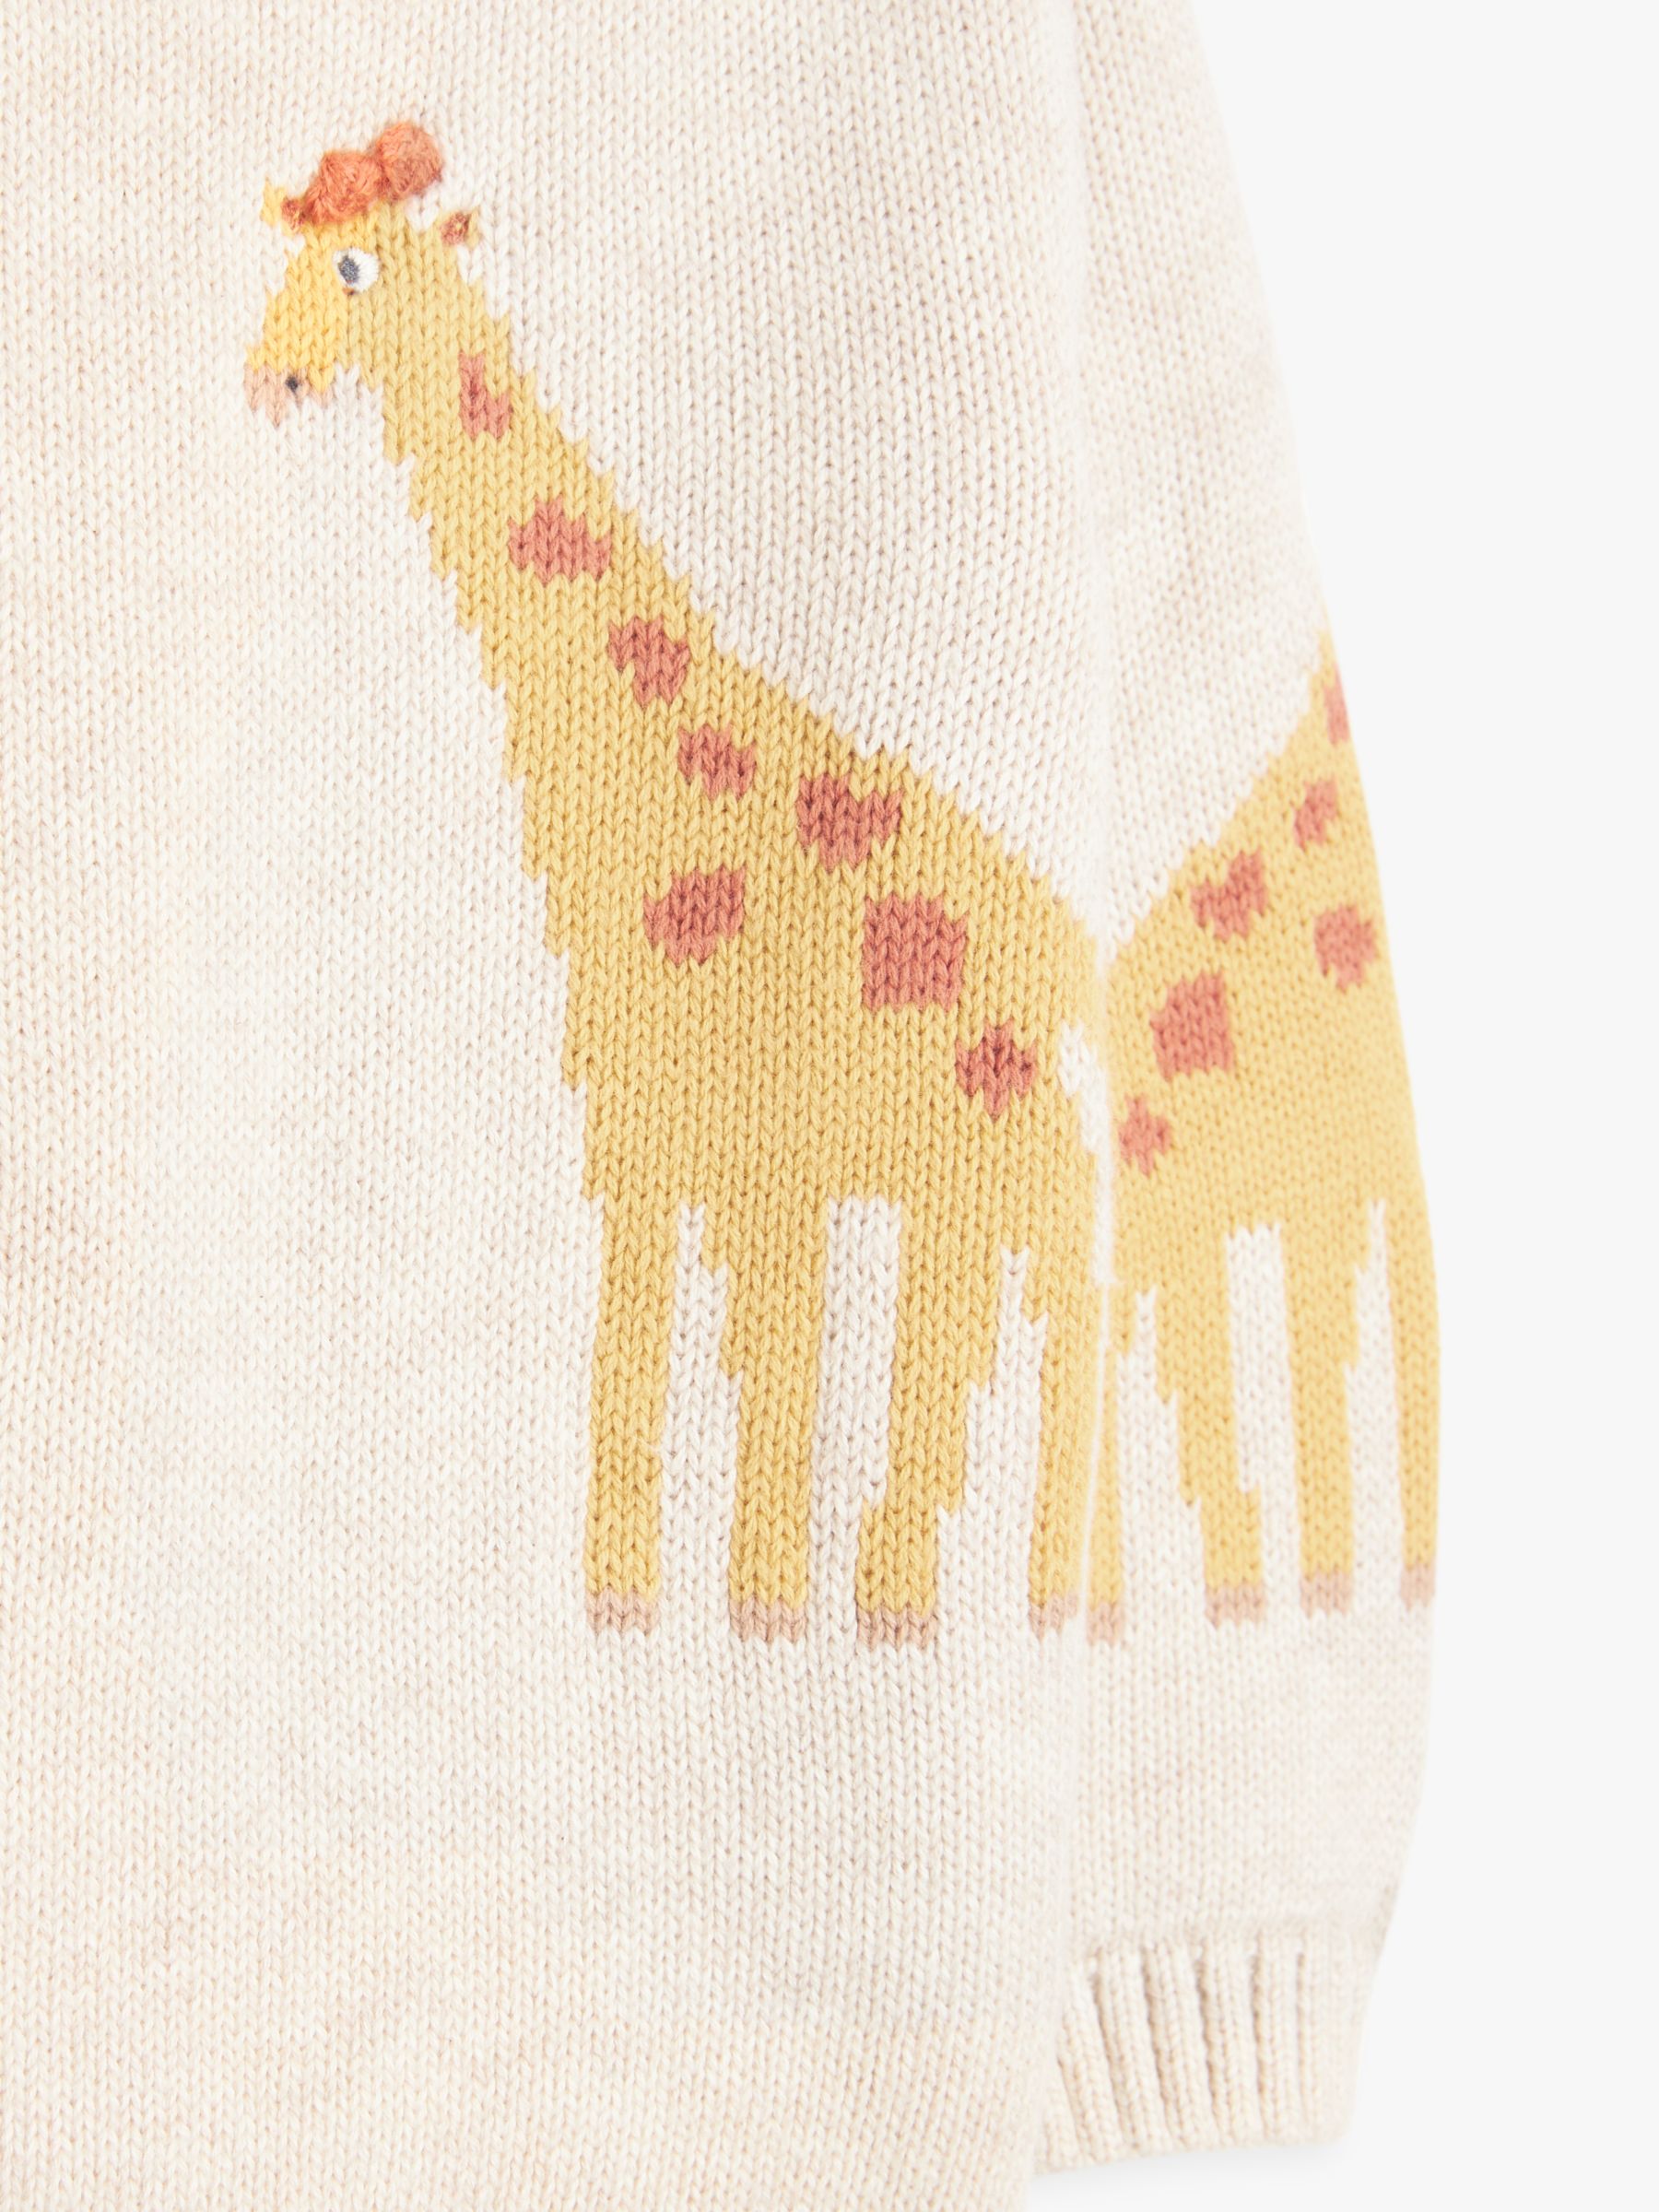 Giraffe Leggings -  UK